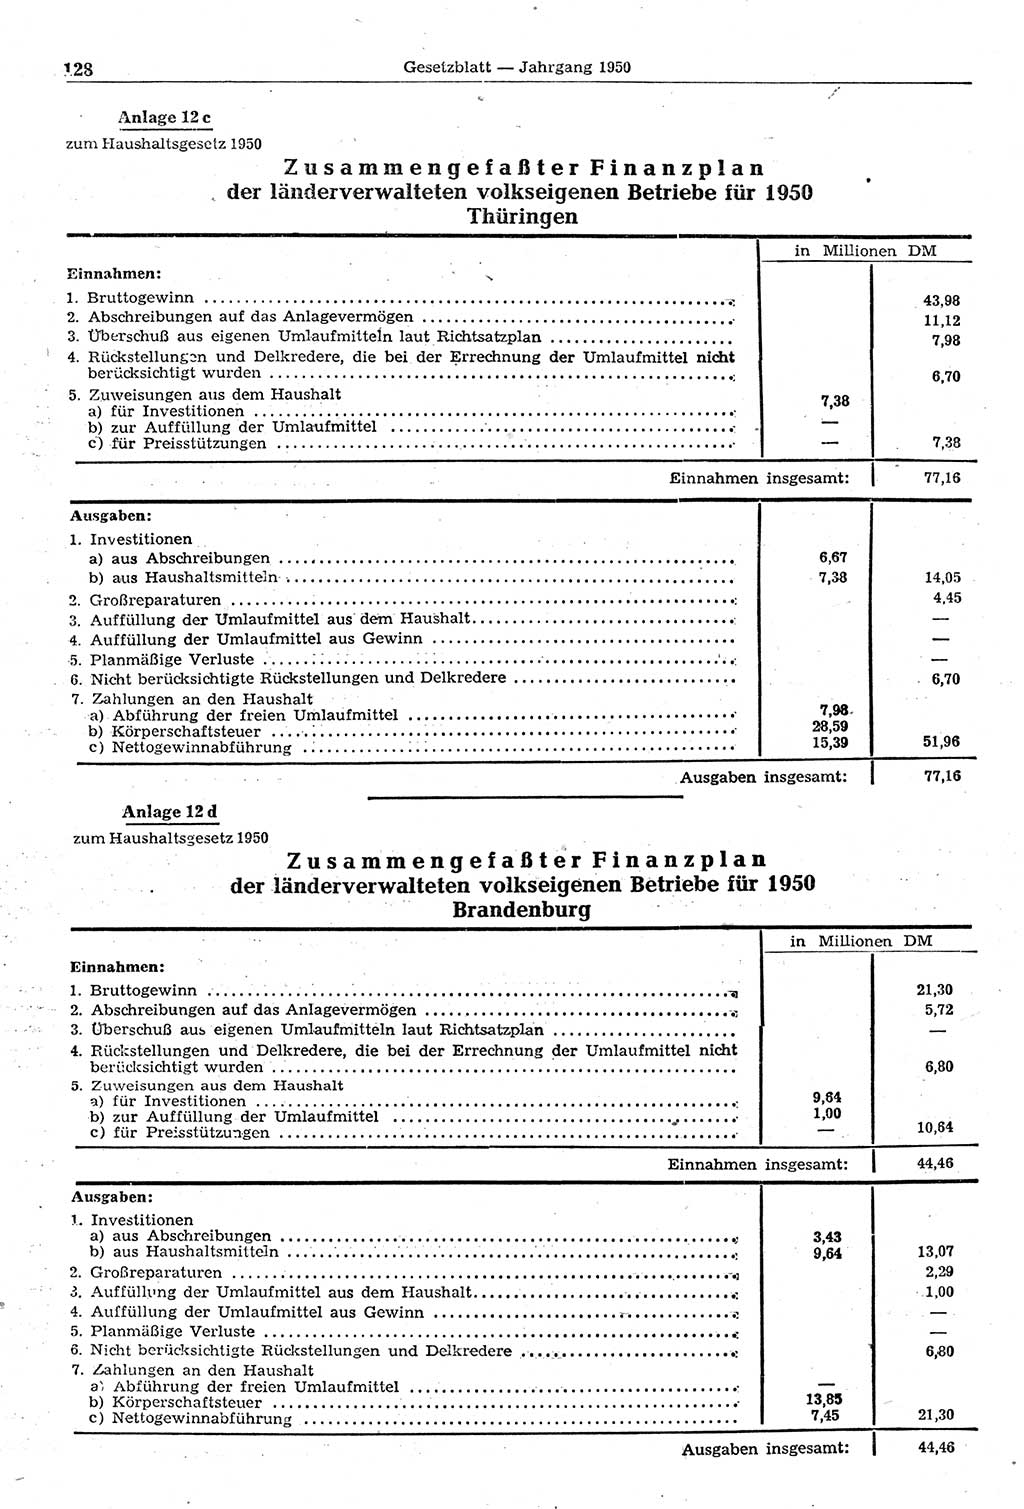 Gesetzblatt (GBl.) der Deutschen Demokratischen Republik (DDR) 1950, Seite 128 (GBl. DDR 1950, S. 128)